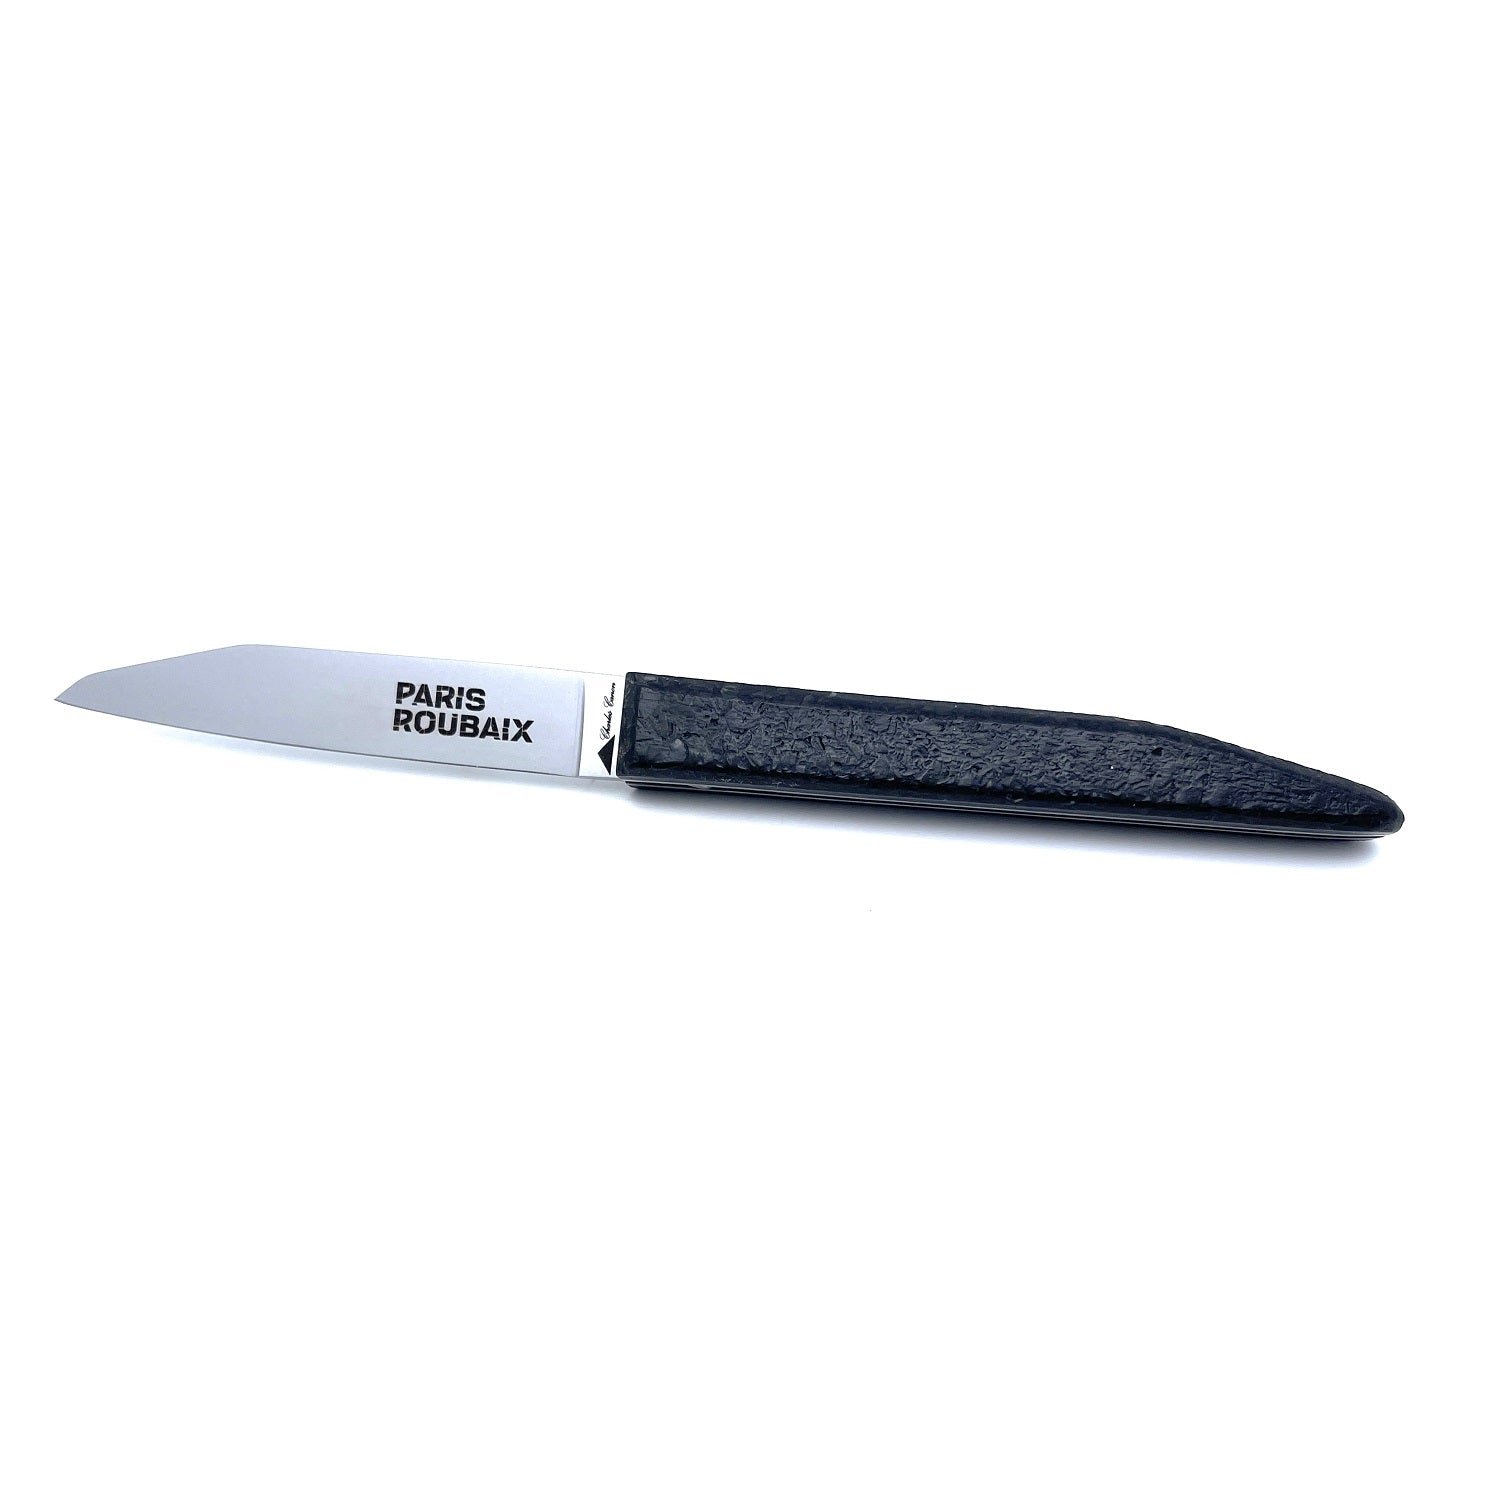 Paris Roubaix knife, real pavé handle